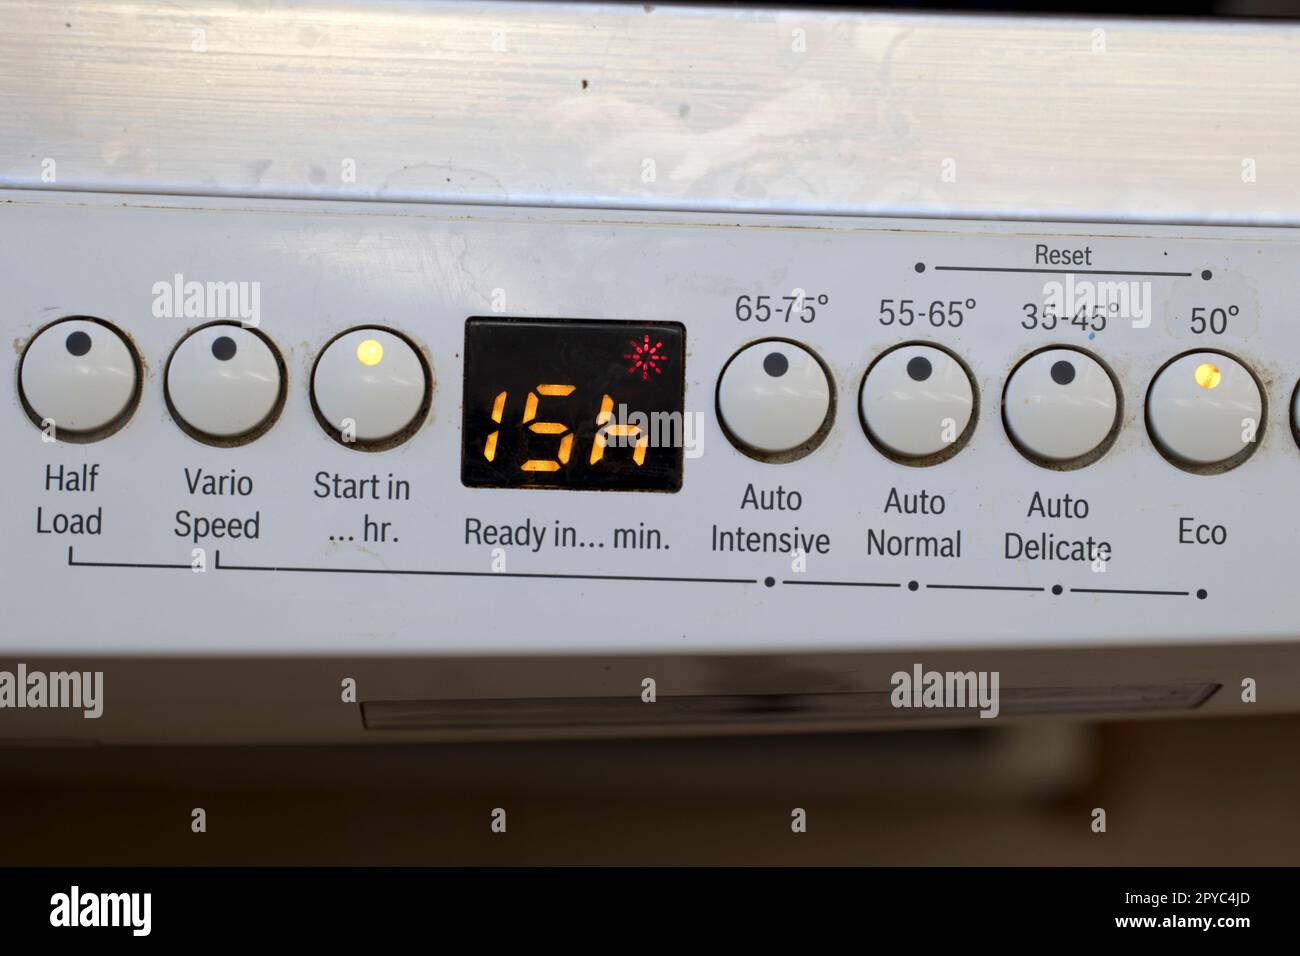 Informationstafel am Bosch Geschirrspüler zeigt eine Verzögerung von 15hr ms an, damit der Geschirrspüler über Nacht kostengünstig mit Strom arbeiten kann Stockfoto